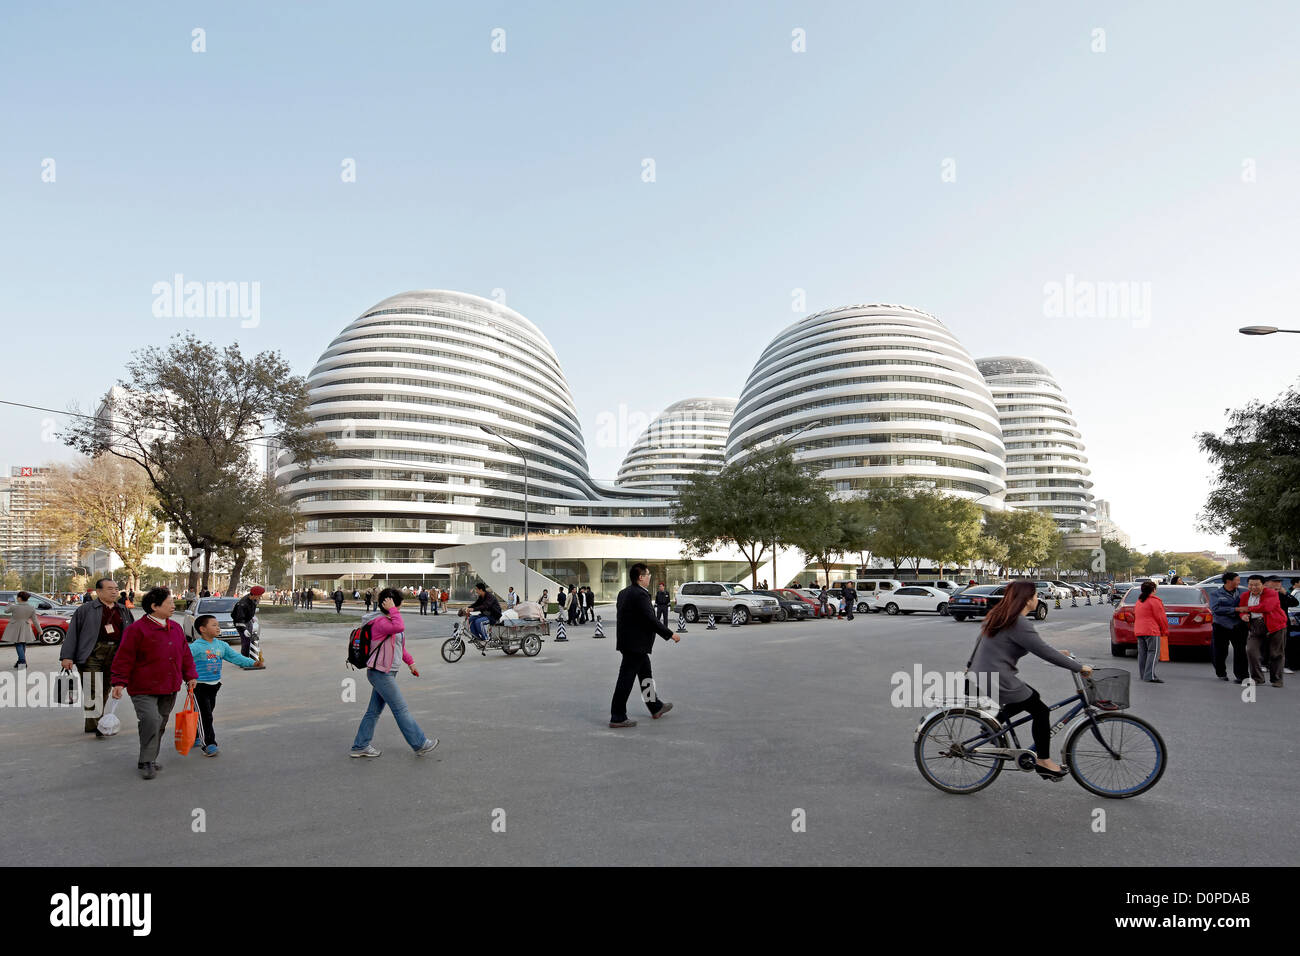 Galaxy-Soho, Peking, China. Architekt: Zaha Hadid Architects, 2012. Weltliche Darstellung des Komplexes in seiner Umgebung. Stockfoto